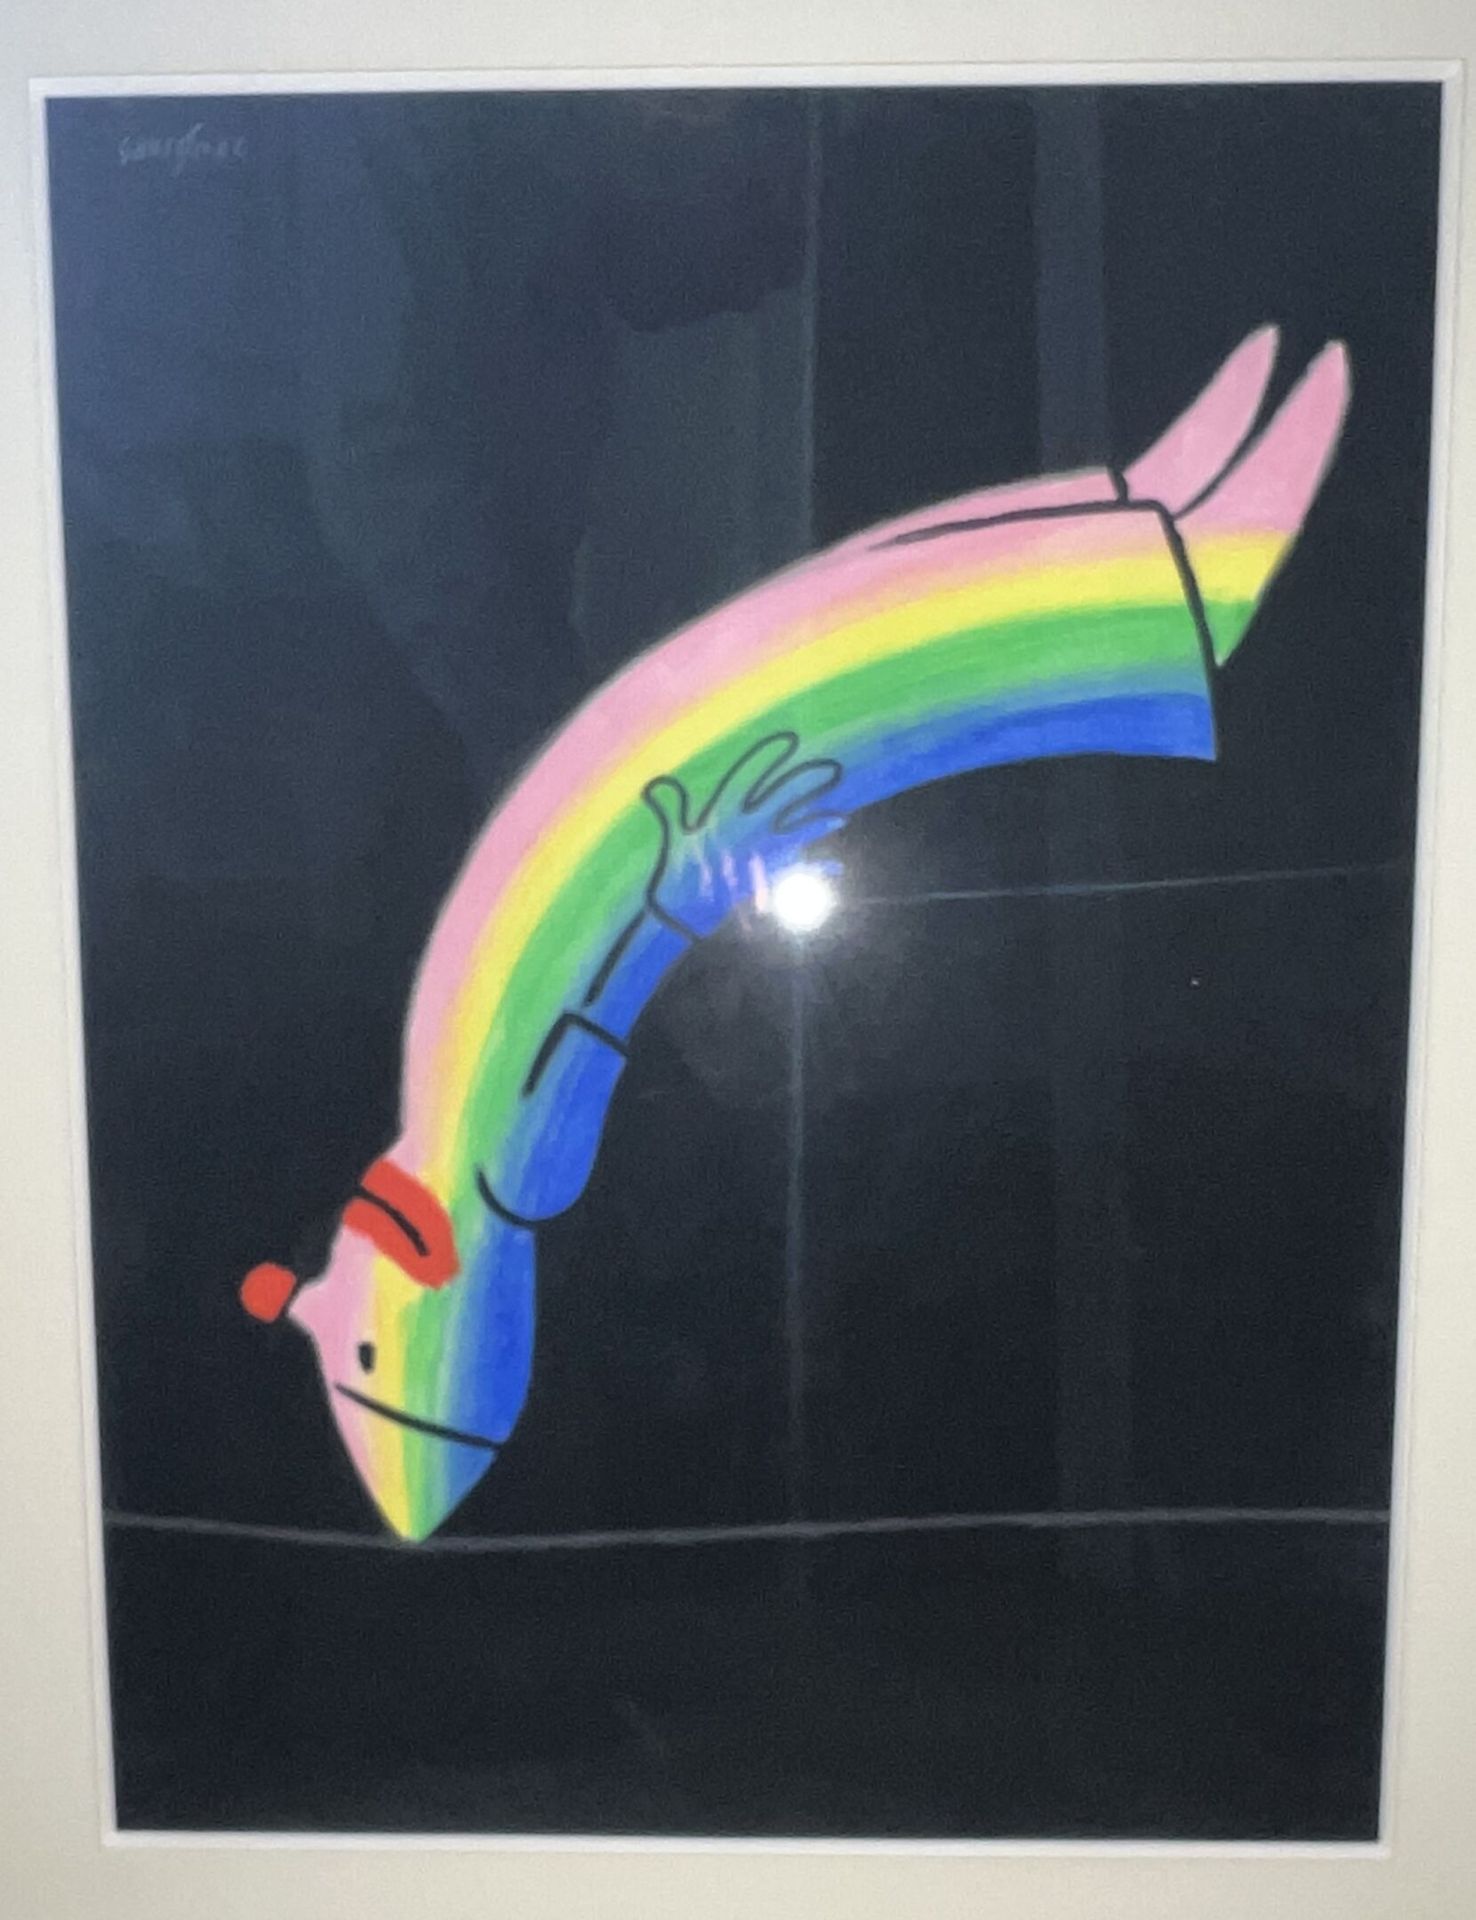 Null 雷蒙-萨维尼亚克（1907-2002）。
小丑的彩虹，1981年。
水粉画（？）左上方有签名。 
63 x 48厘米。